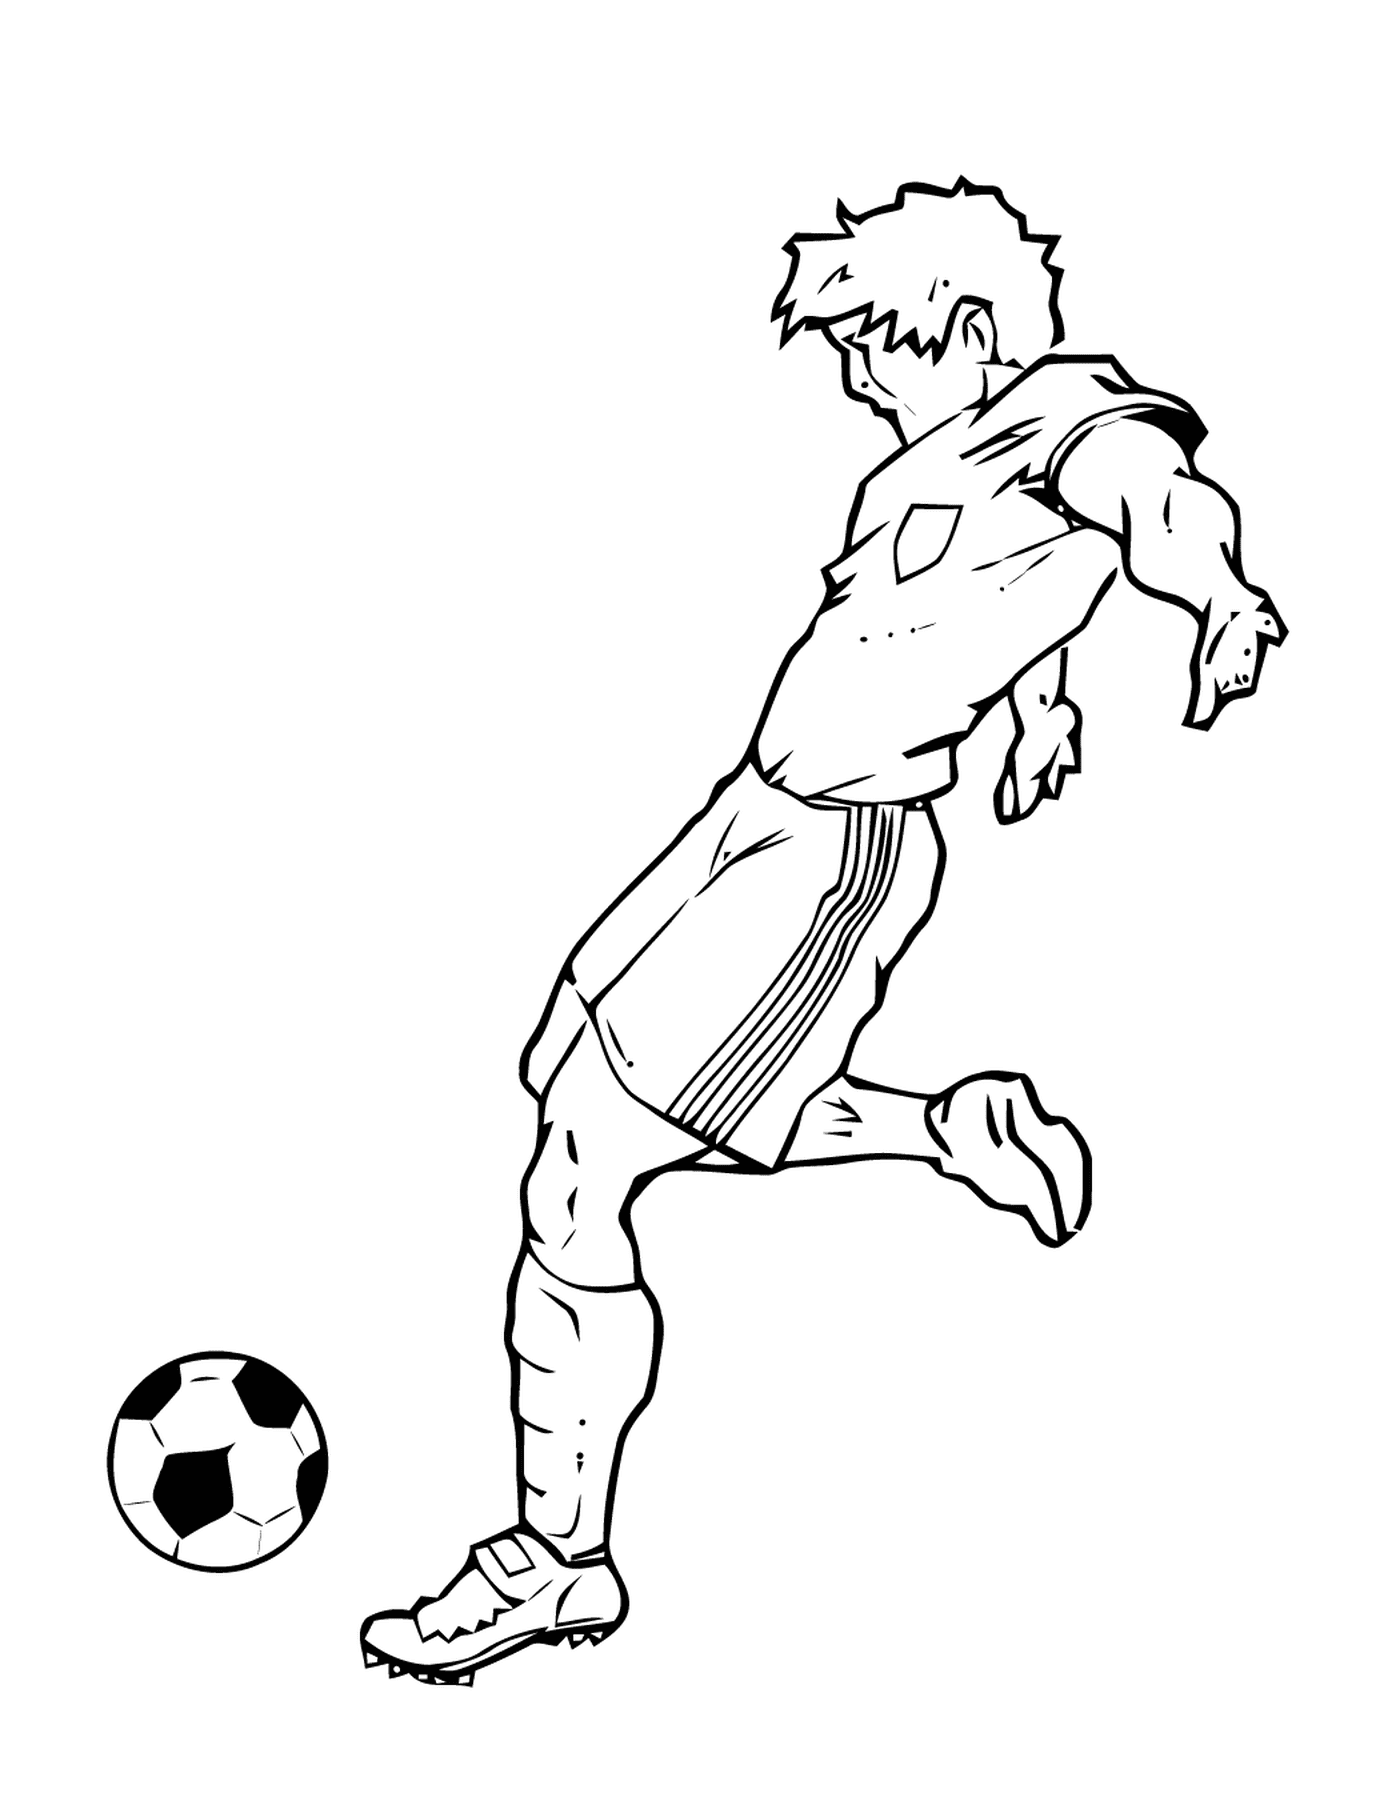  Sport, giocatore di calcio che colpisce una palla 